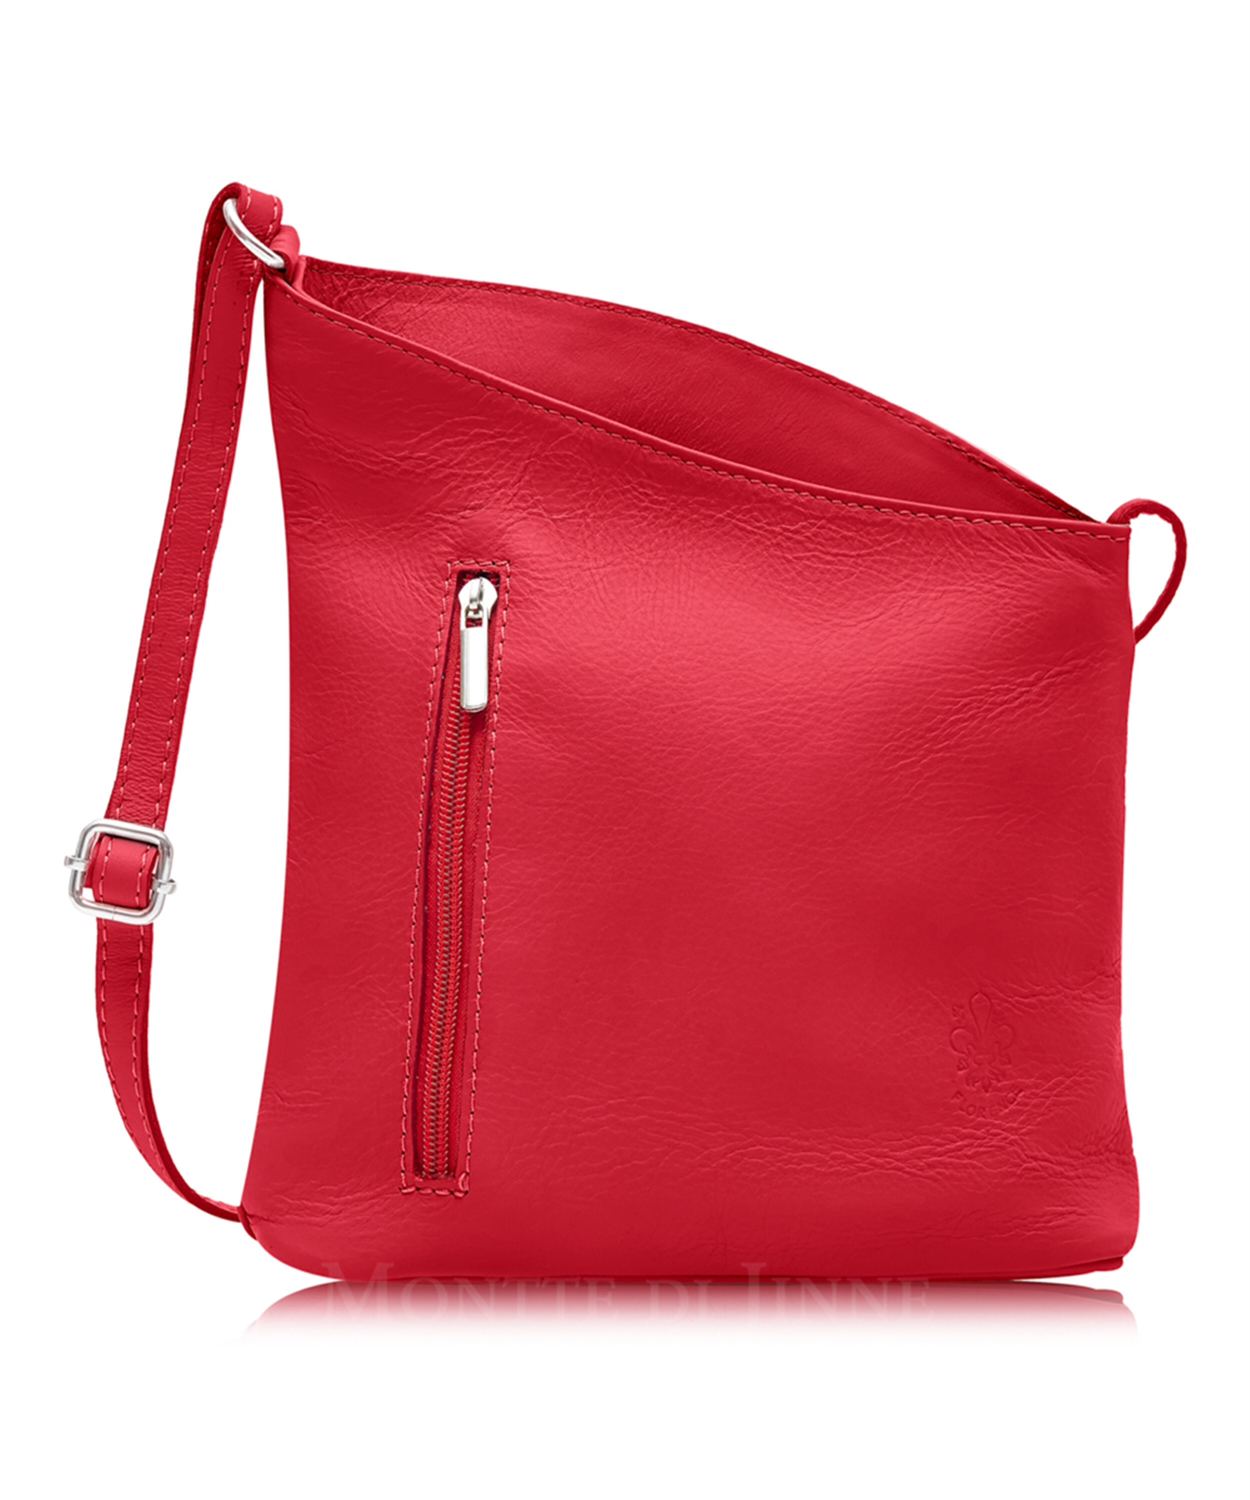 Red Soft Leather Angled Shoulder Bag 